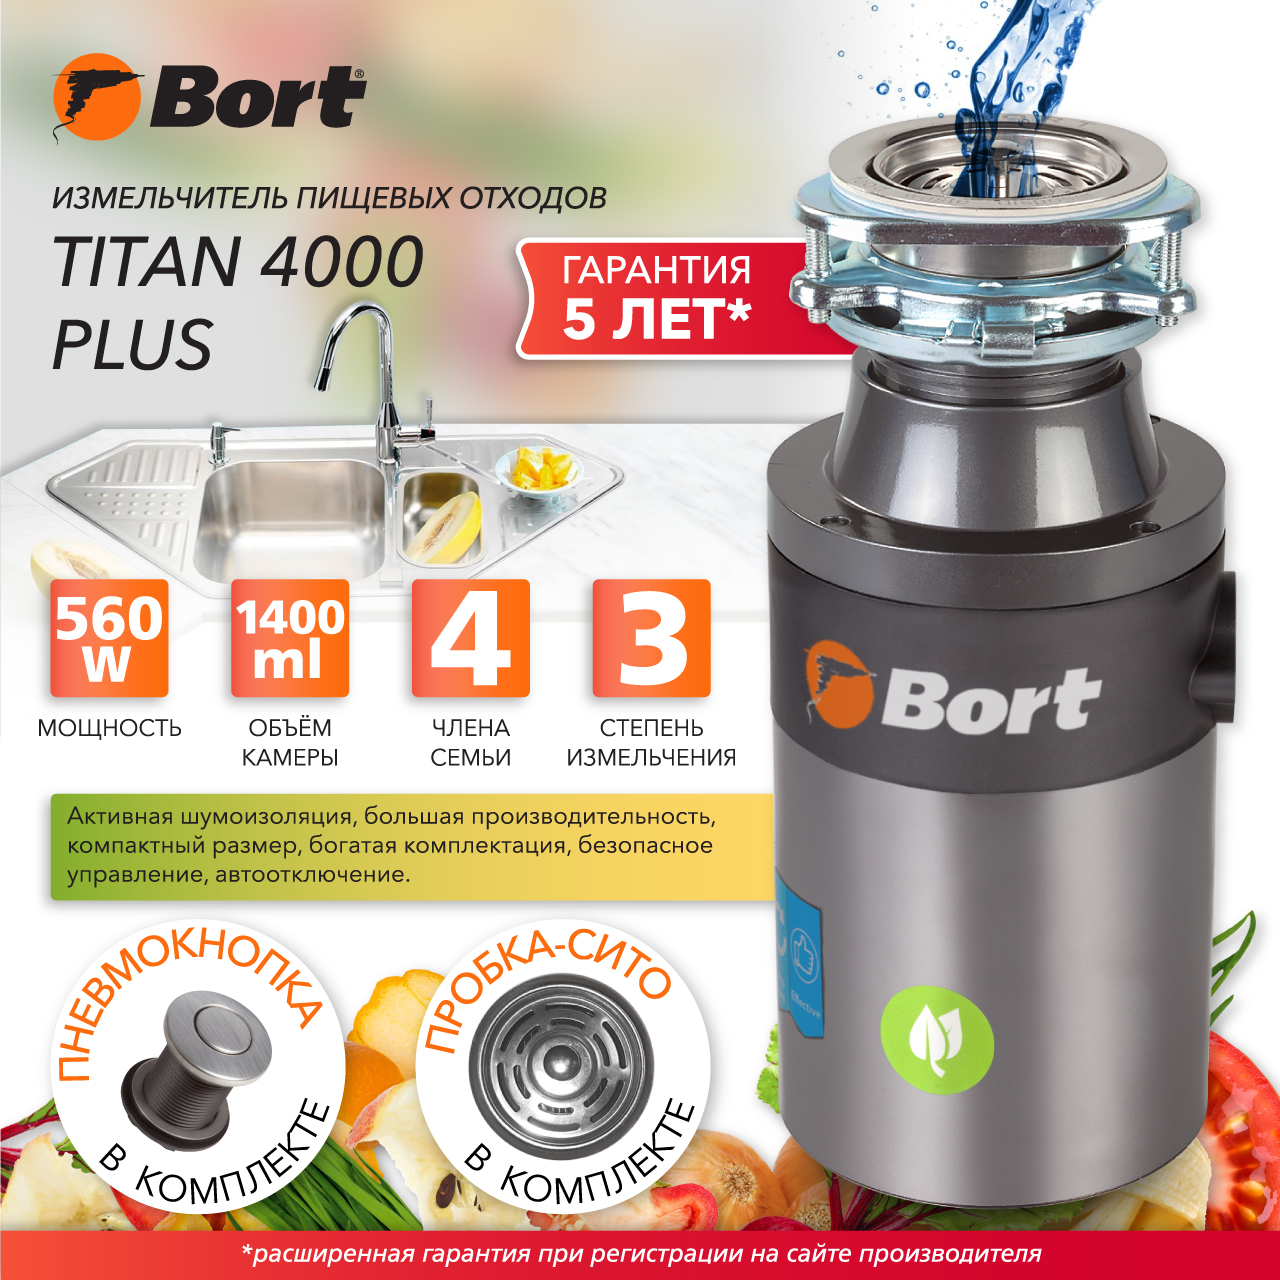 Измельчитель пищевых отходов Bort TITAN 4000 PLUS (91275776) серебристый измельчитель пищевых отходов bort titan max power 91275790 серебристый